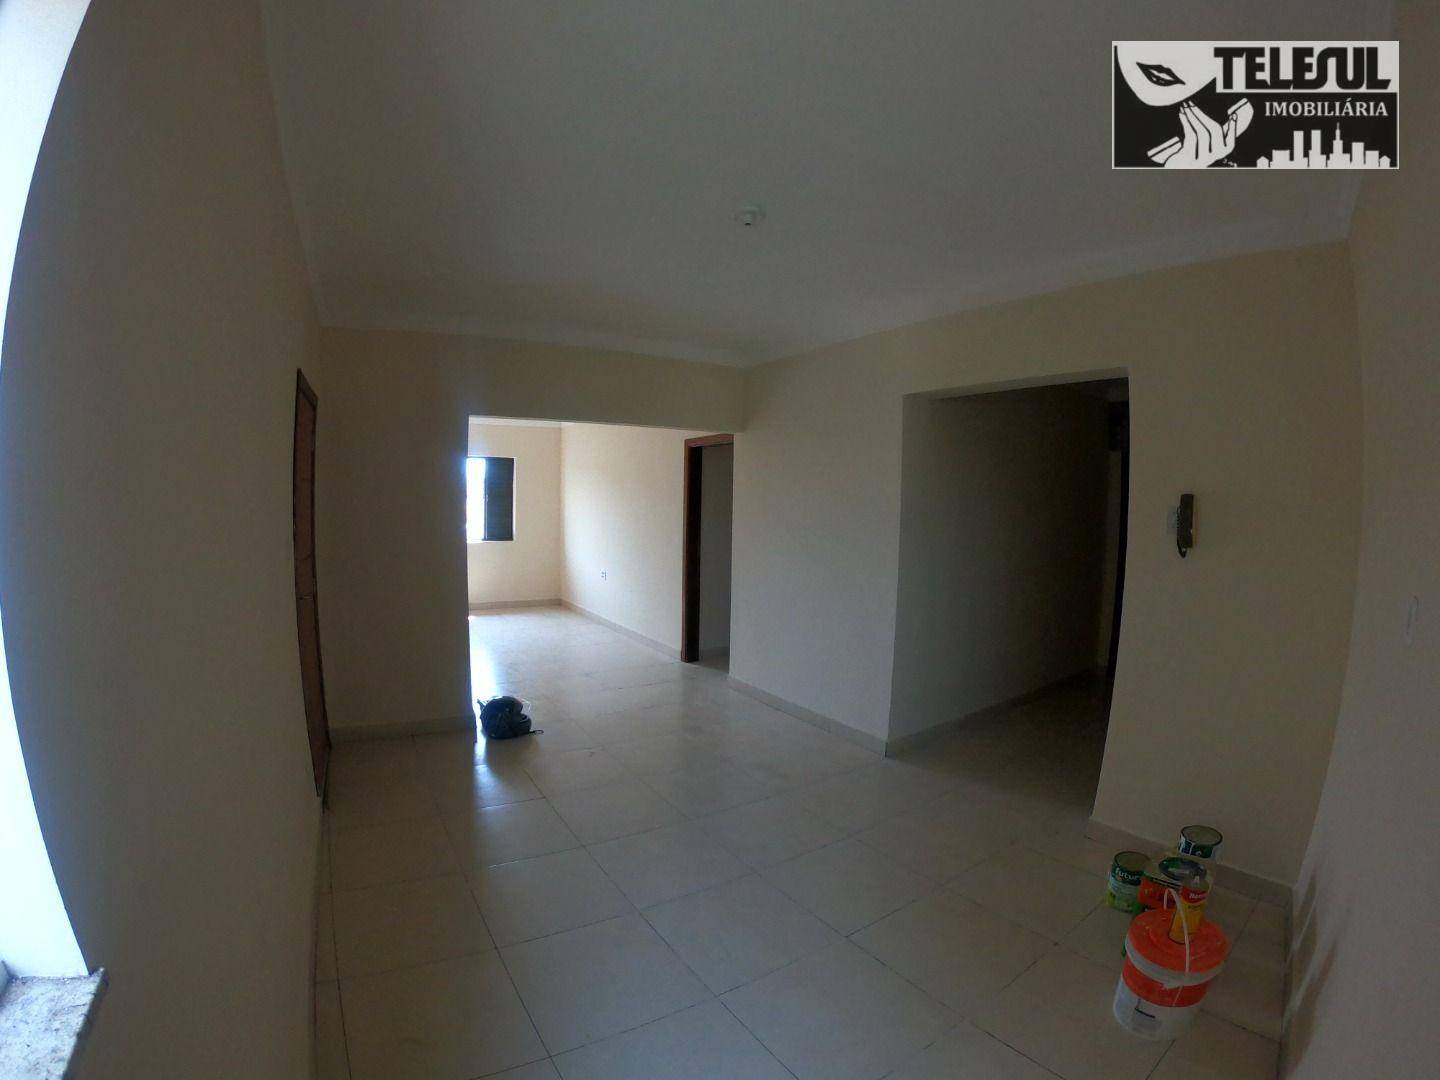 Apartamento, 3 quartos, 130 m² - Foto 4